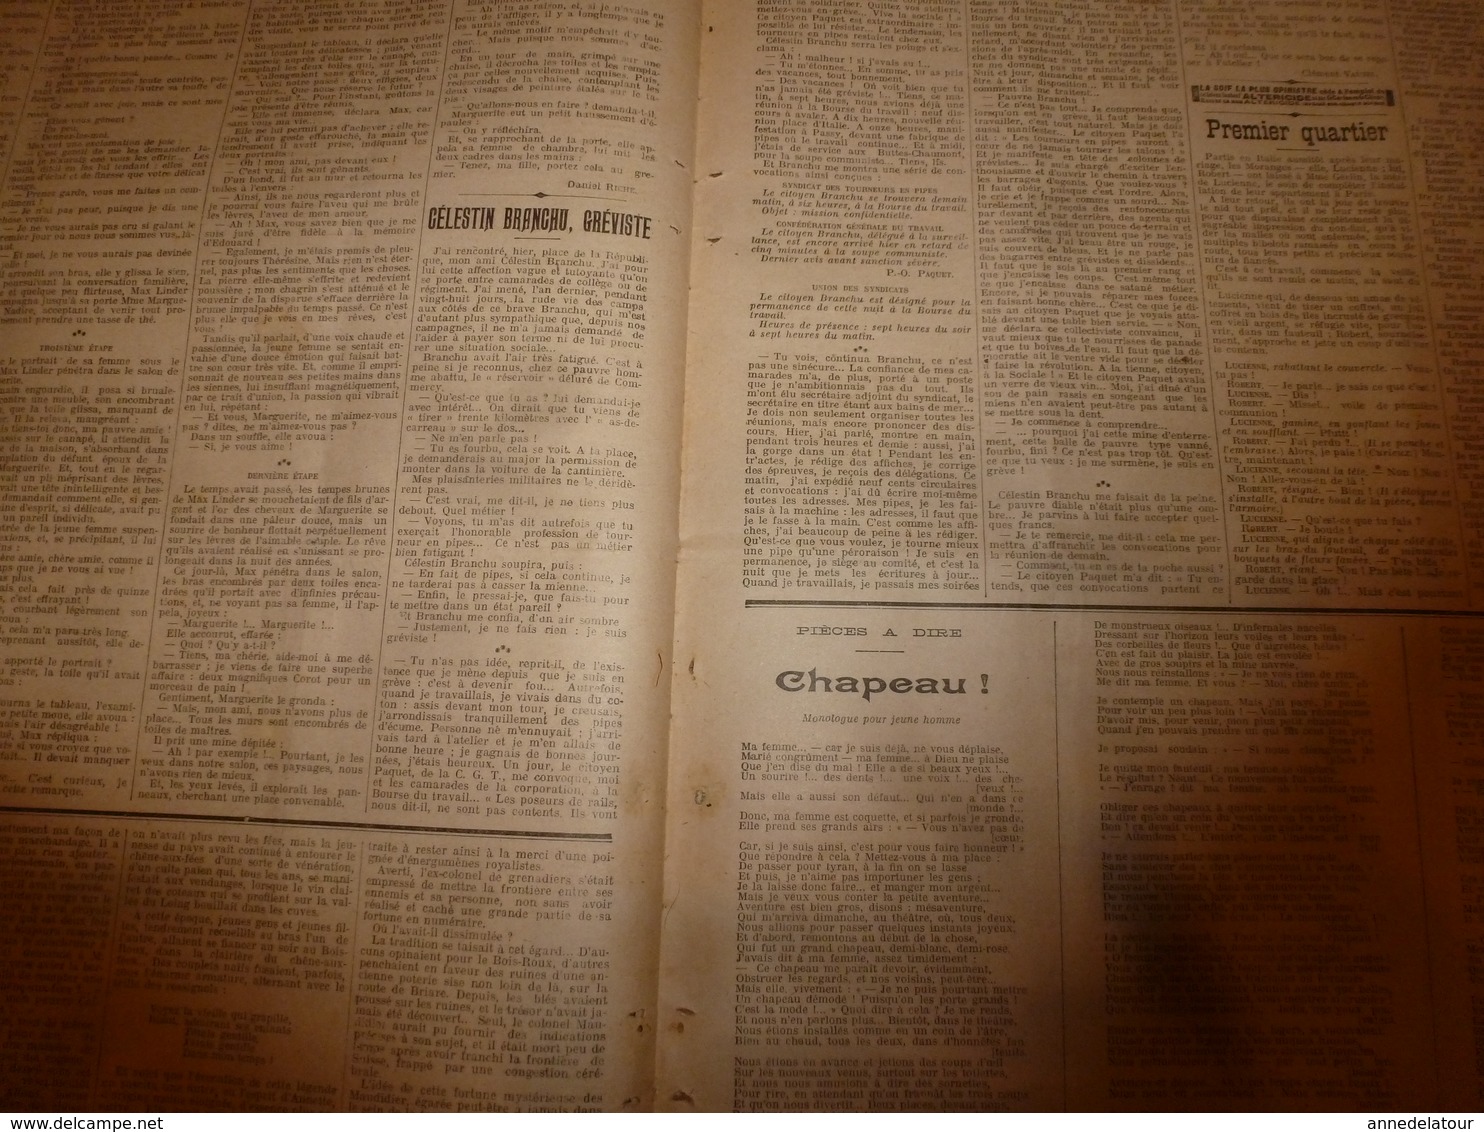 1908 LE PETIT JOURNAL:Supplice marocain à Marakech; Celestin Branchu le gréviste de Commercy;Journal d'un amoureux;etc